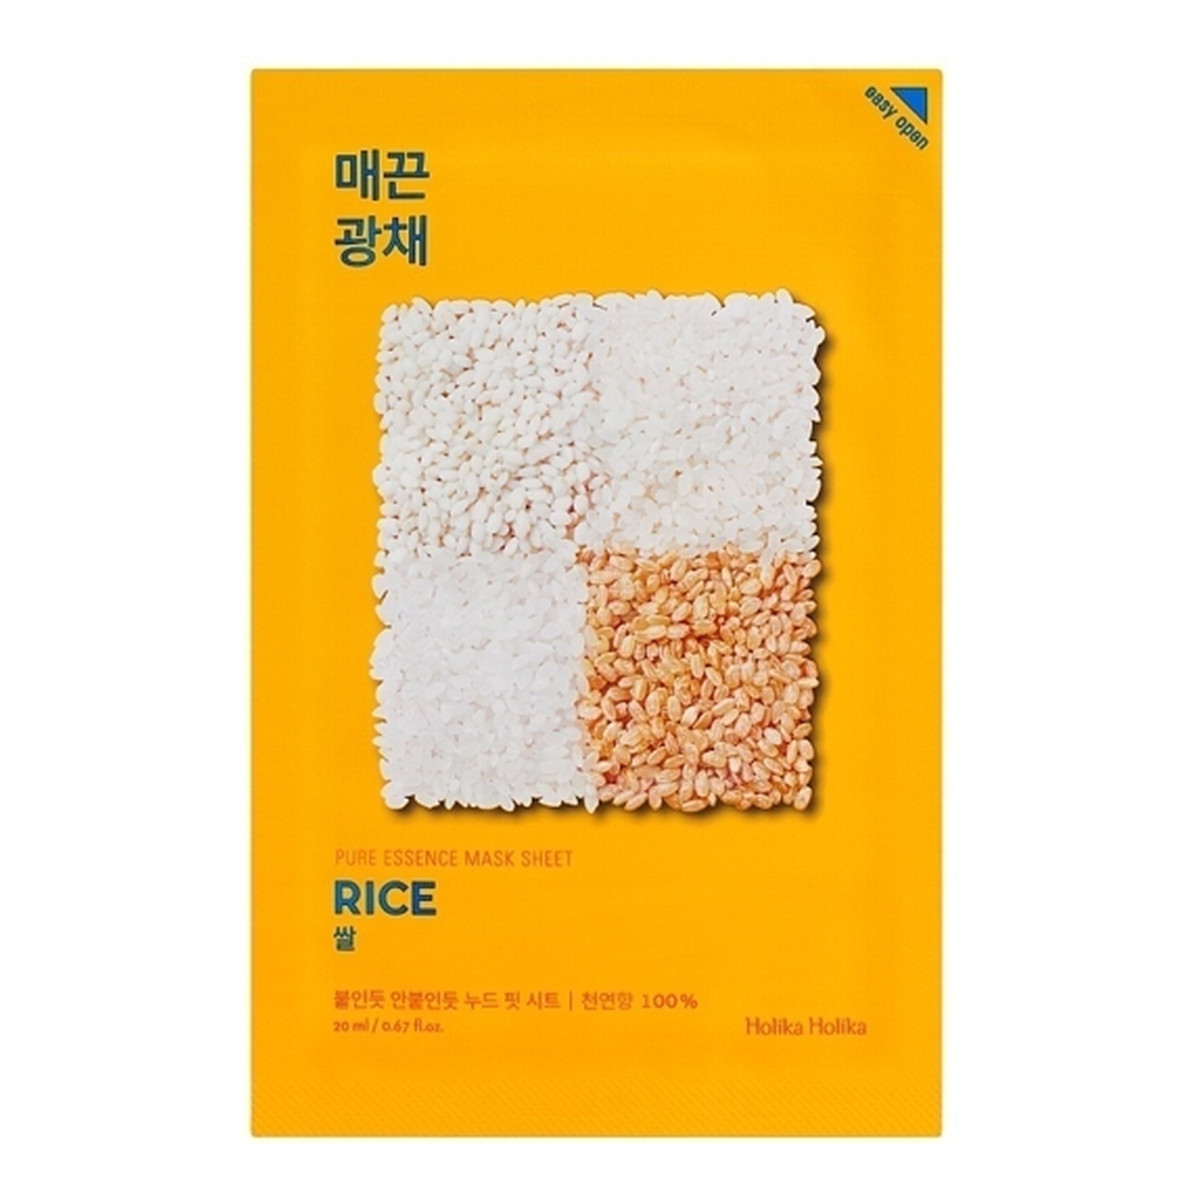 Holika Holika Pure Essence Mask Sheet Rice maseczka z ekstraktem z ryżu odżywcza 1 sztuka 20ml